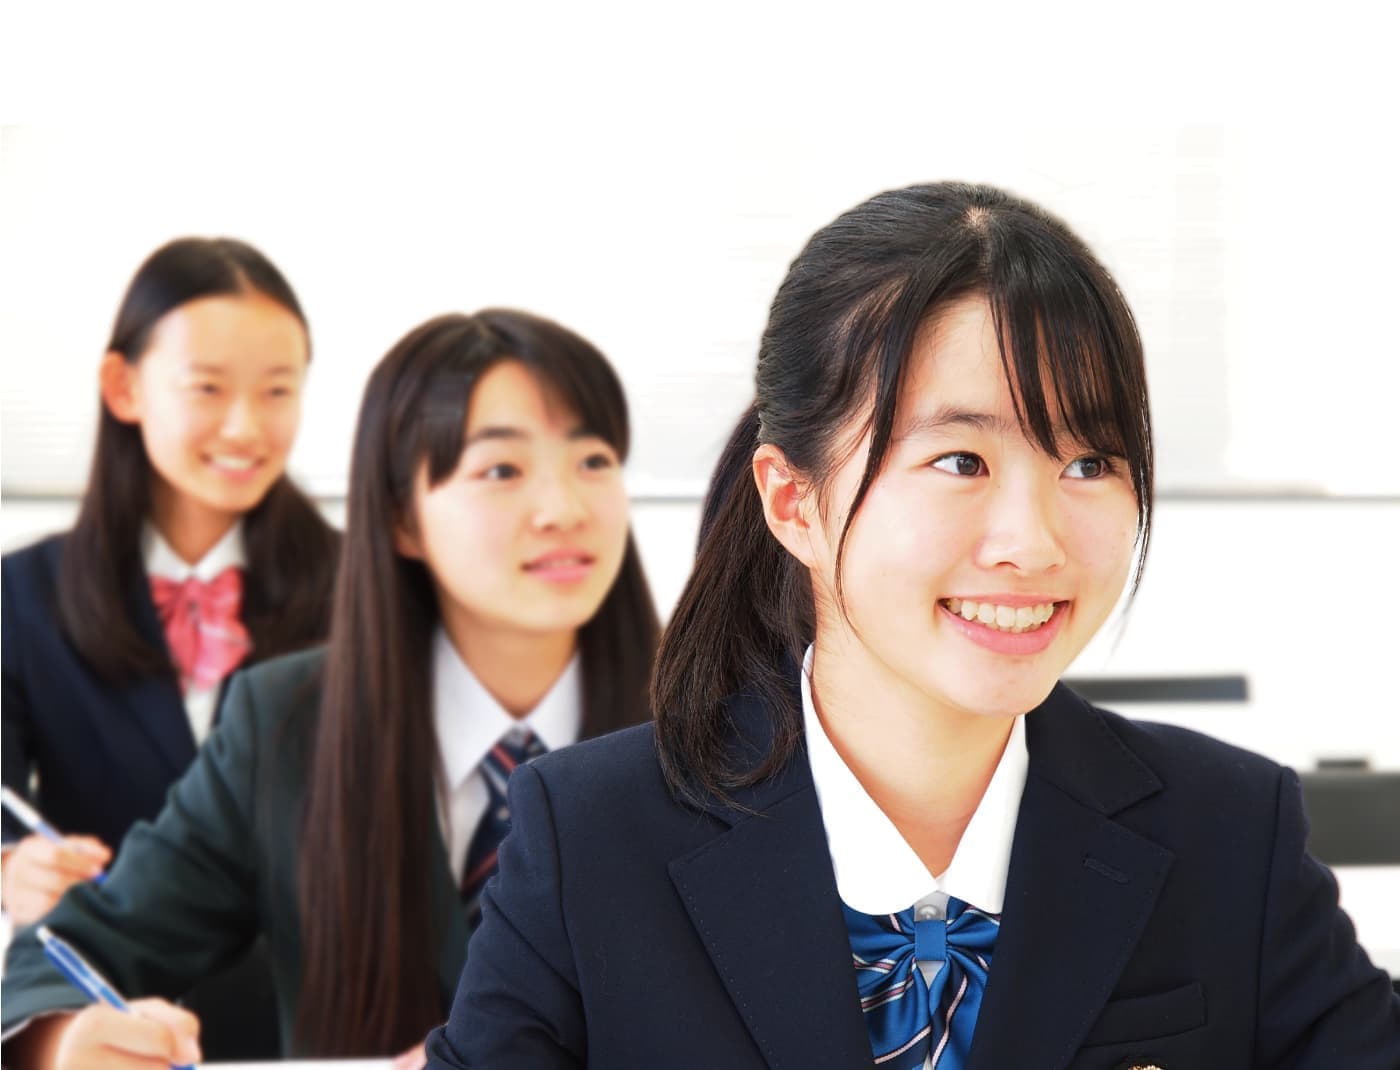 W早稲田ゼミの中学生コース。授業に参加している生徒